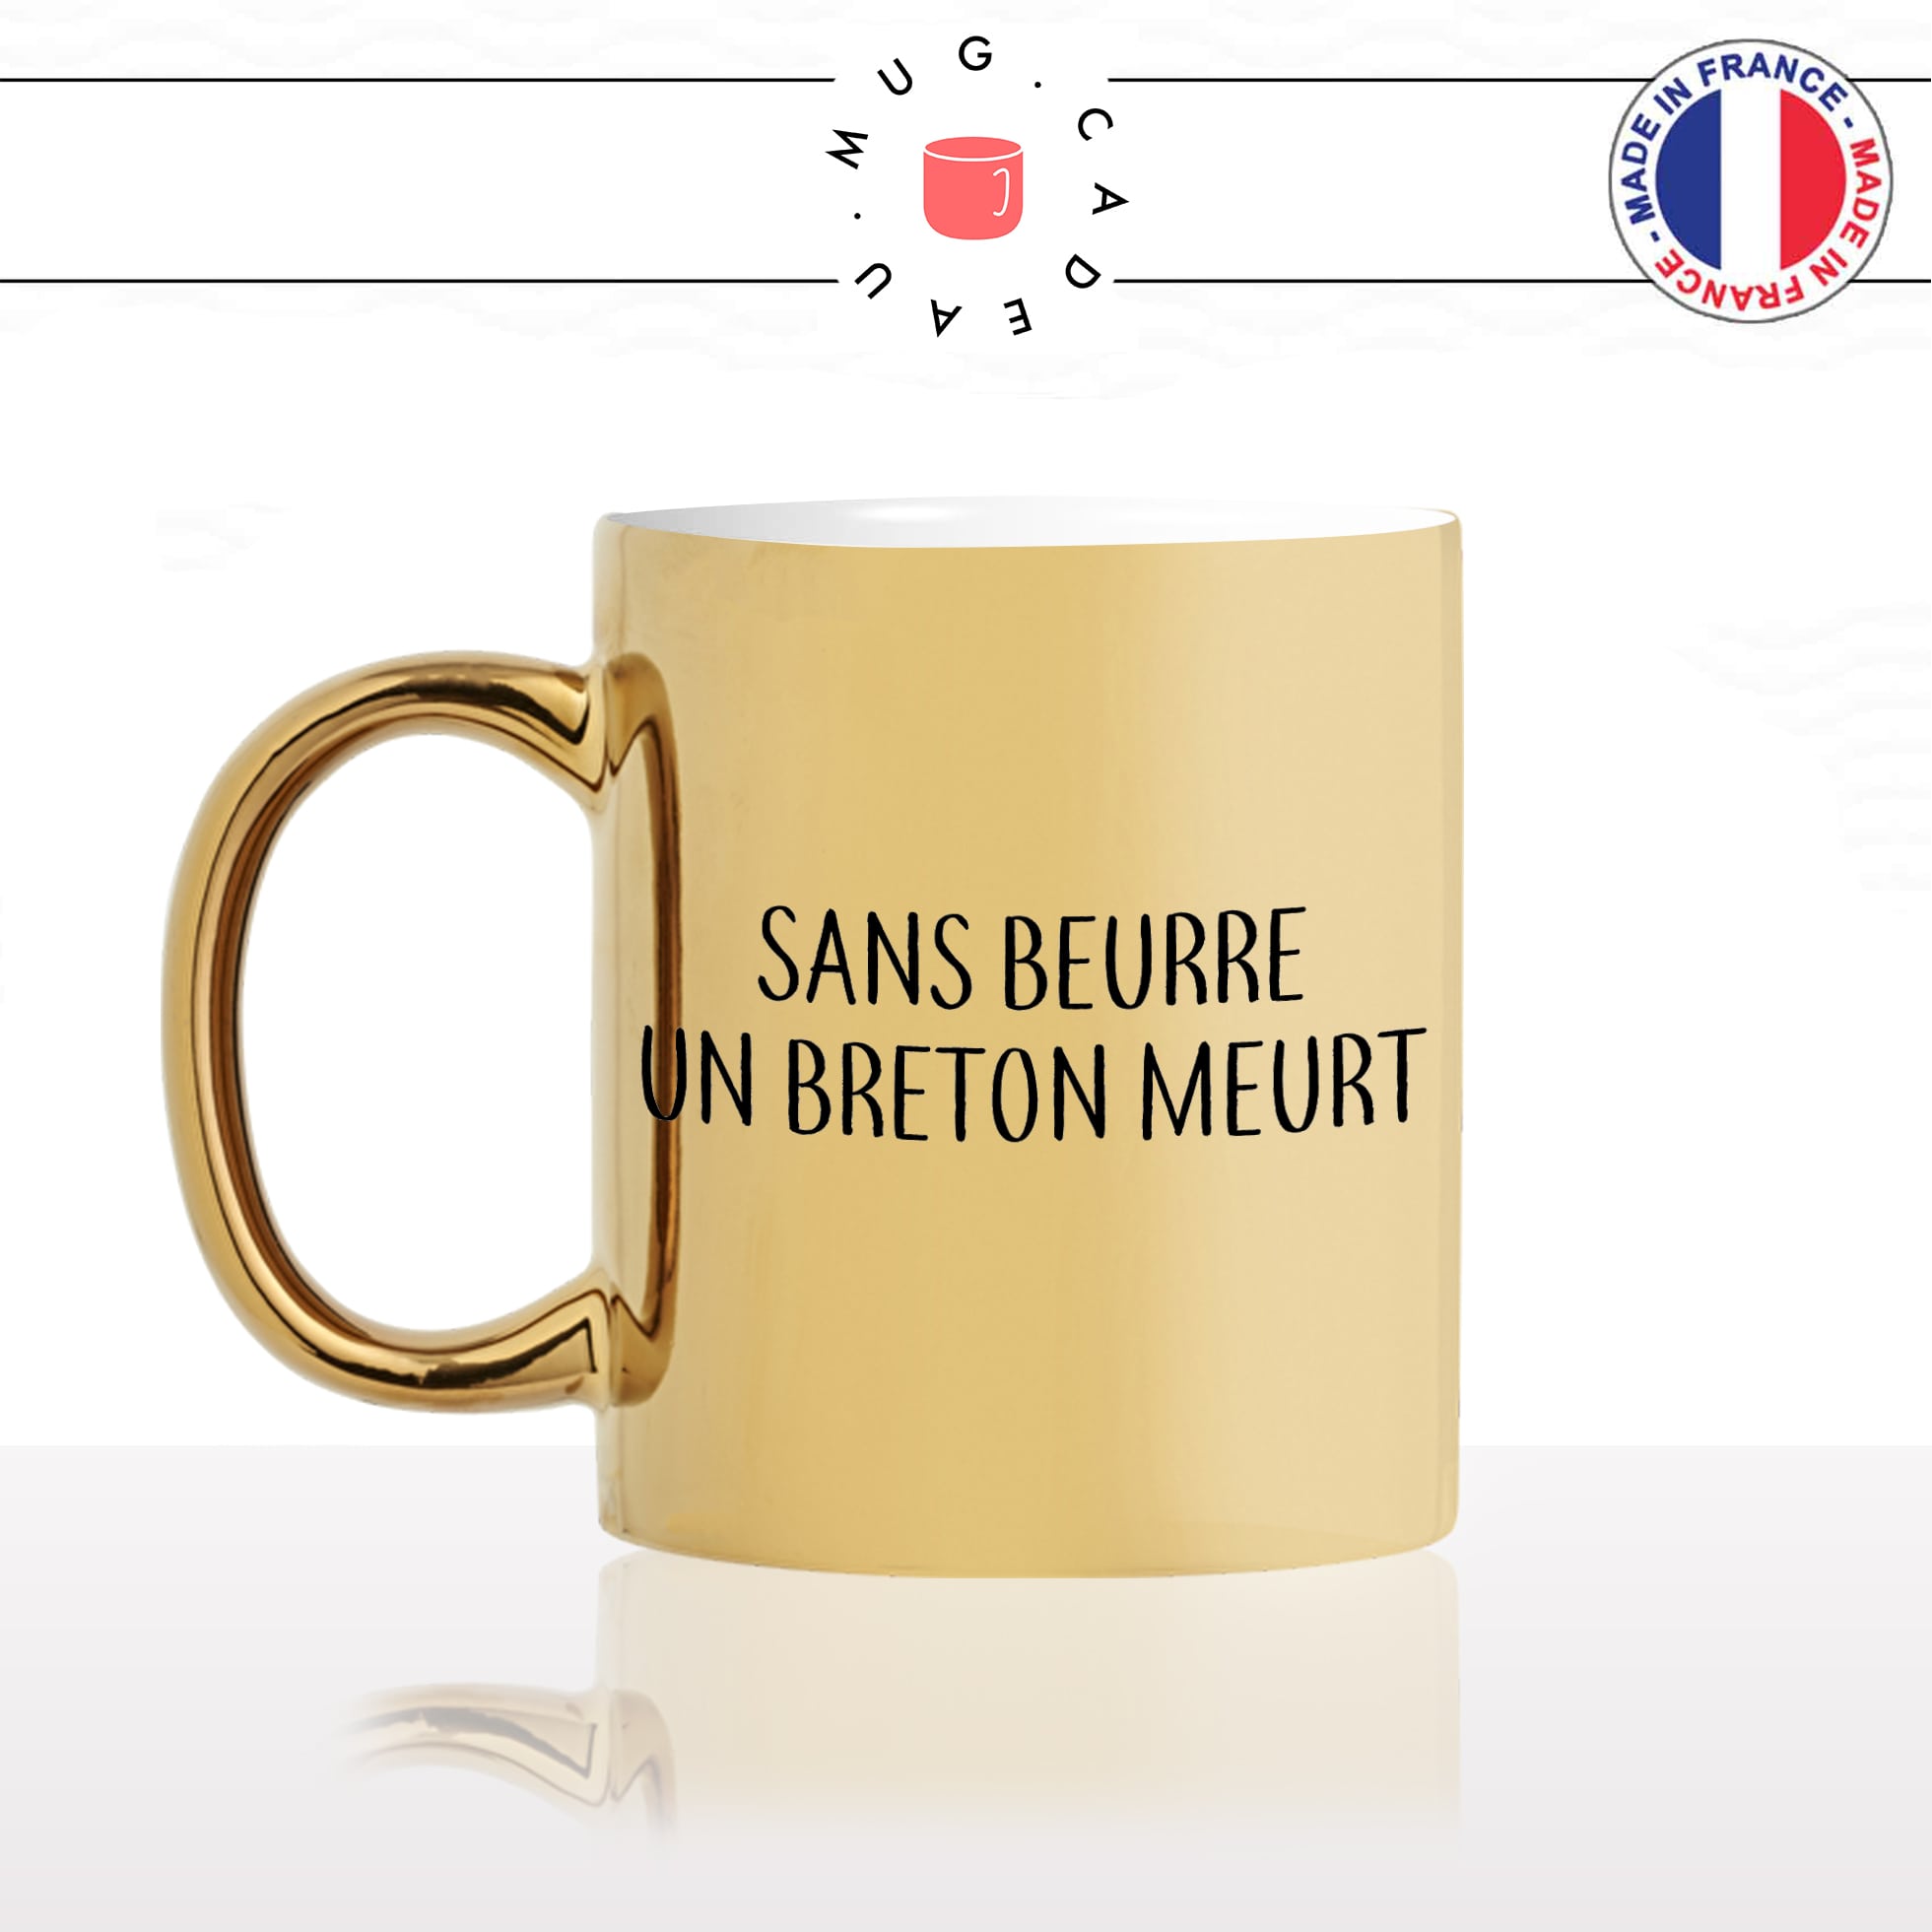 mug-tasse-or-gold-doré-sans-beurre-un-breton-meurt-citation-humoristique-beurre-salé-bretagne-fun-idée-cadeau-original-personnalisé-café-thé-min